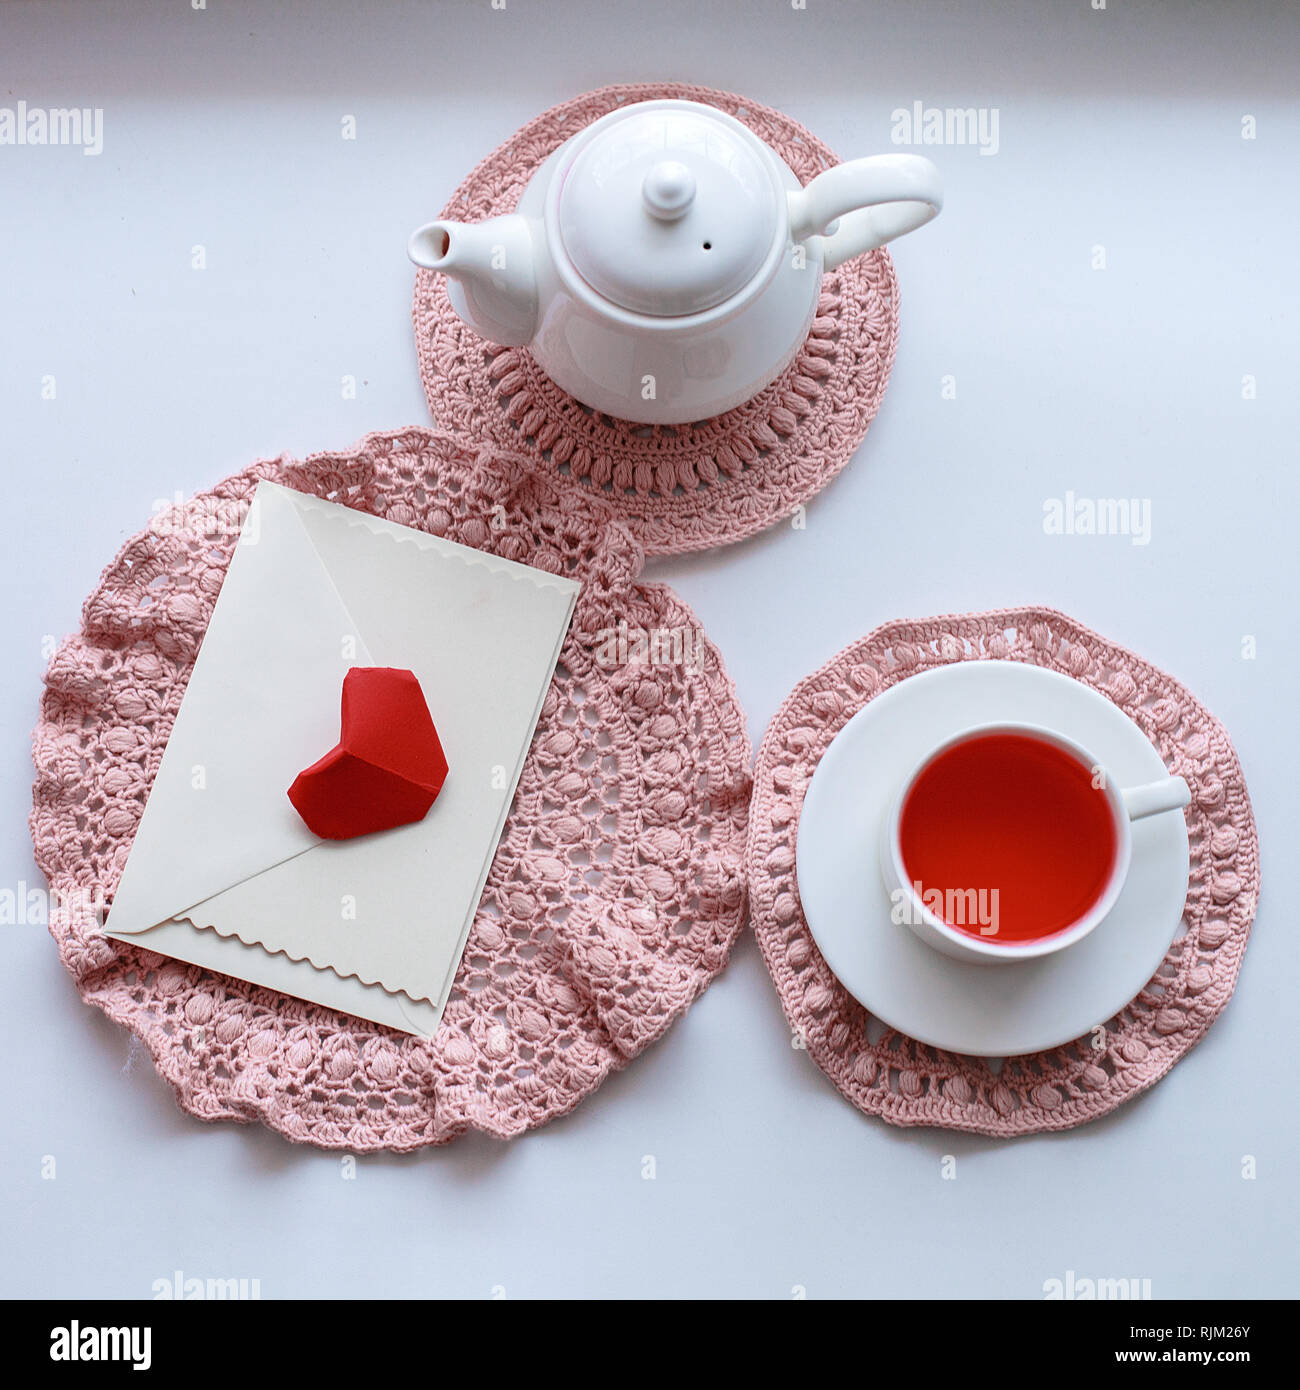 Tasse duftenden rosa Tee auf Häkeln Serviette, Teekanne und Umschlag auf  der Fensterbank. Valentines Tag. Romantik Guten Morgen Stockfotografie -  Alamy